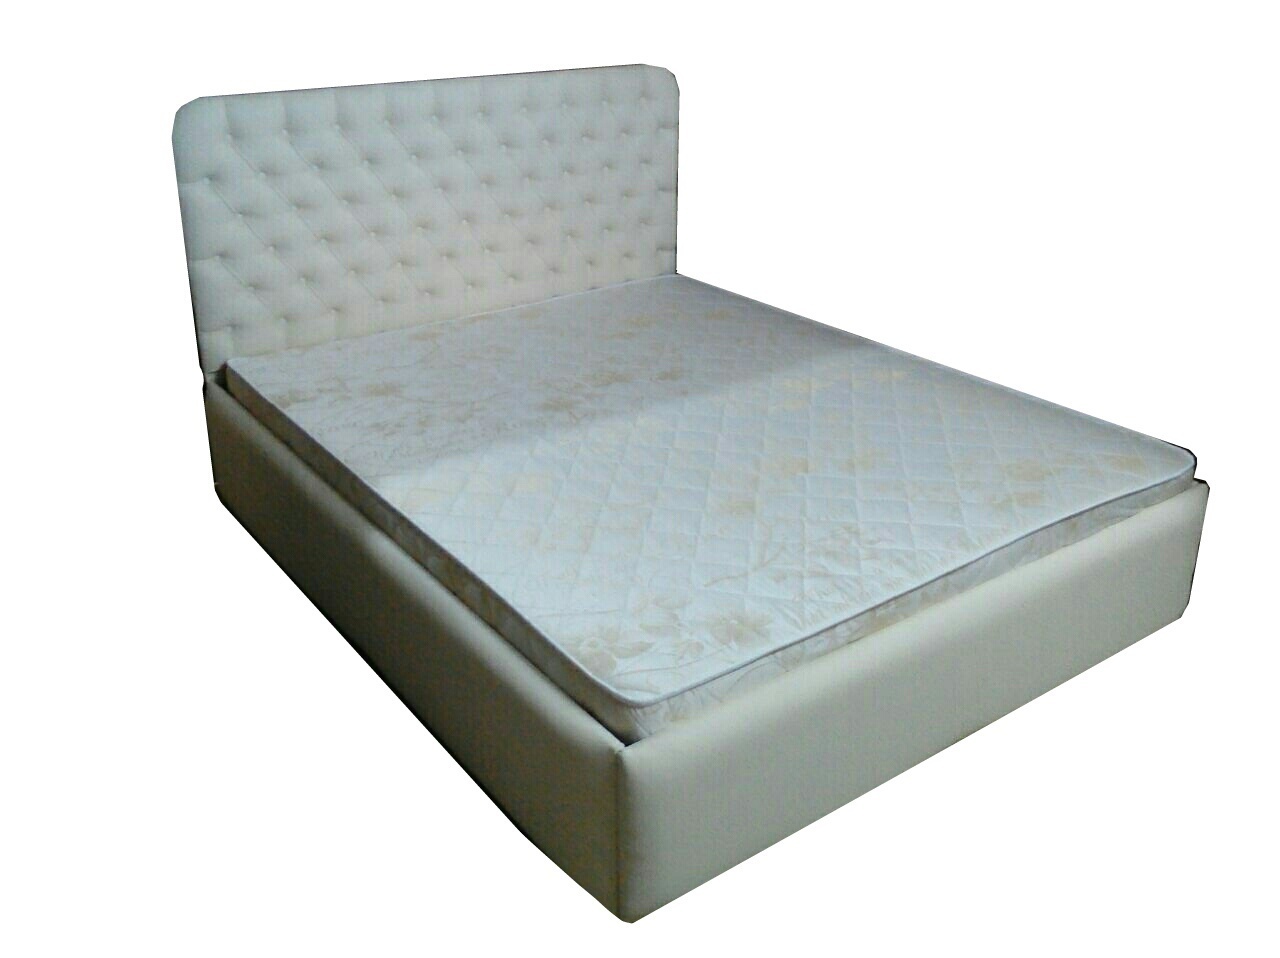 Двуспальная кровать "Стиль-2" купить по привлекательной цене в г. Барнауле в ТРЦ "Весна" в СТУДИИ МЕБЕЛИ